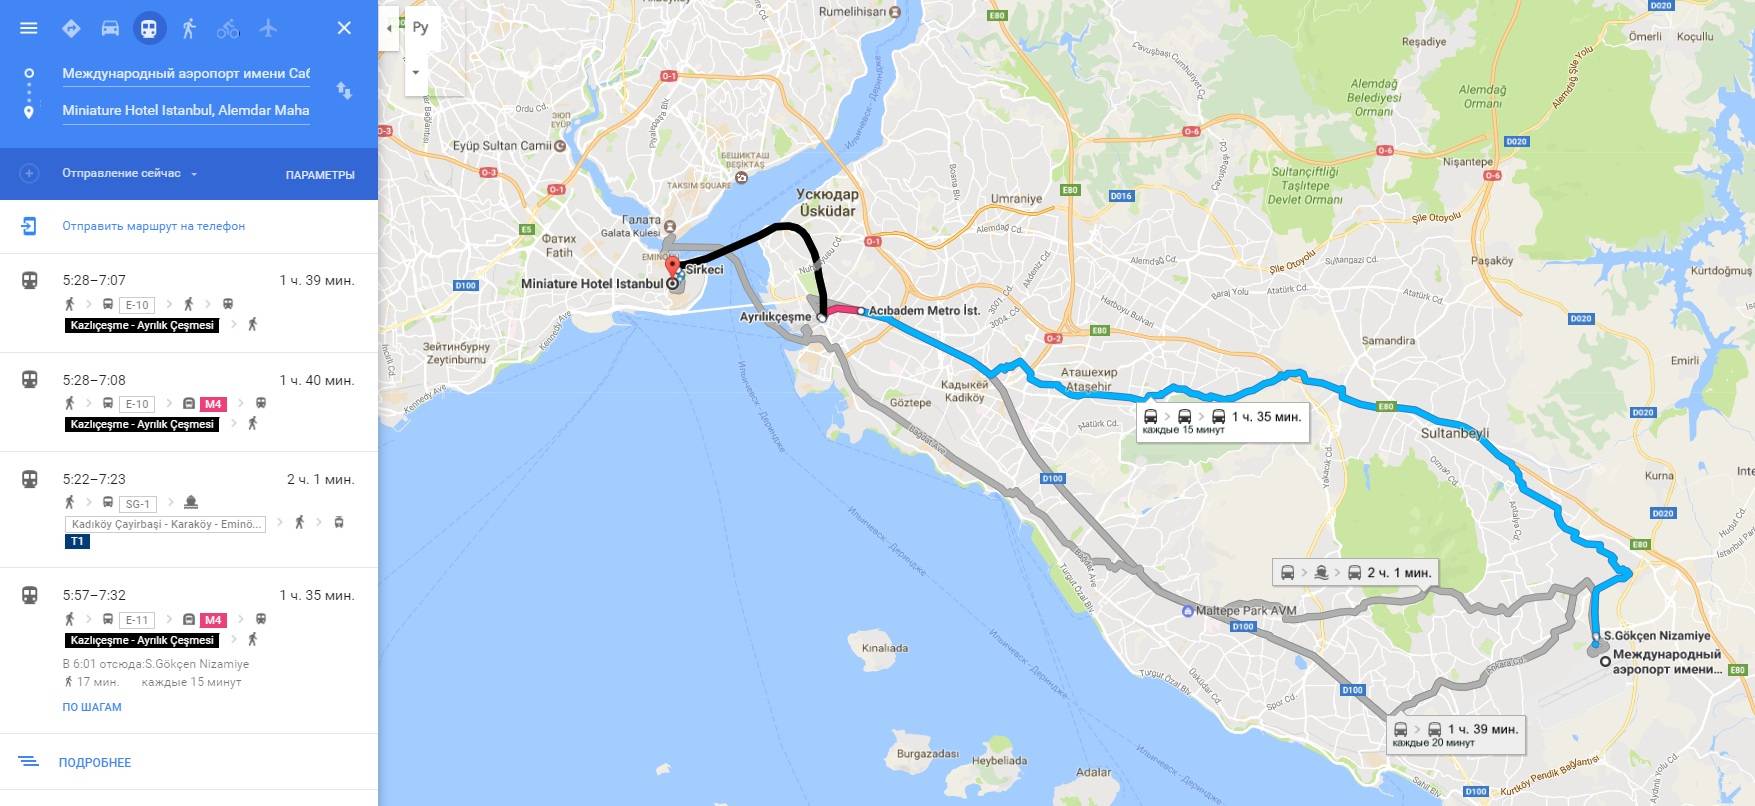 Аэропорт ататюрк в стамбуле: фото и схема аэропорта. как добраться до аэропорта ататюрк - 2021 - страница 8